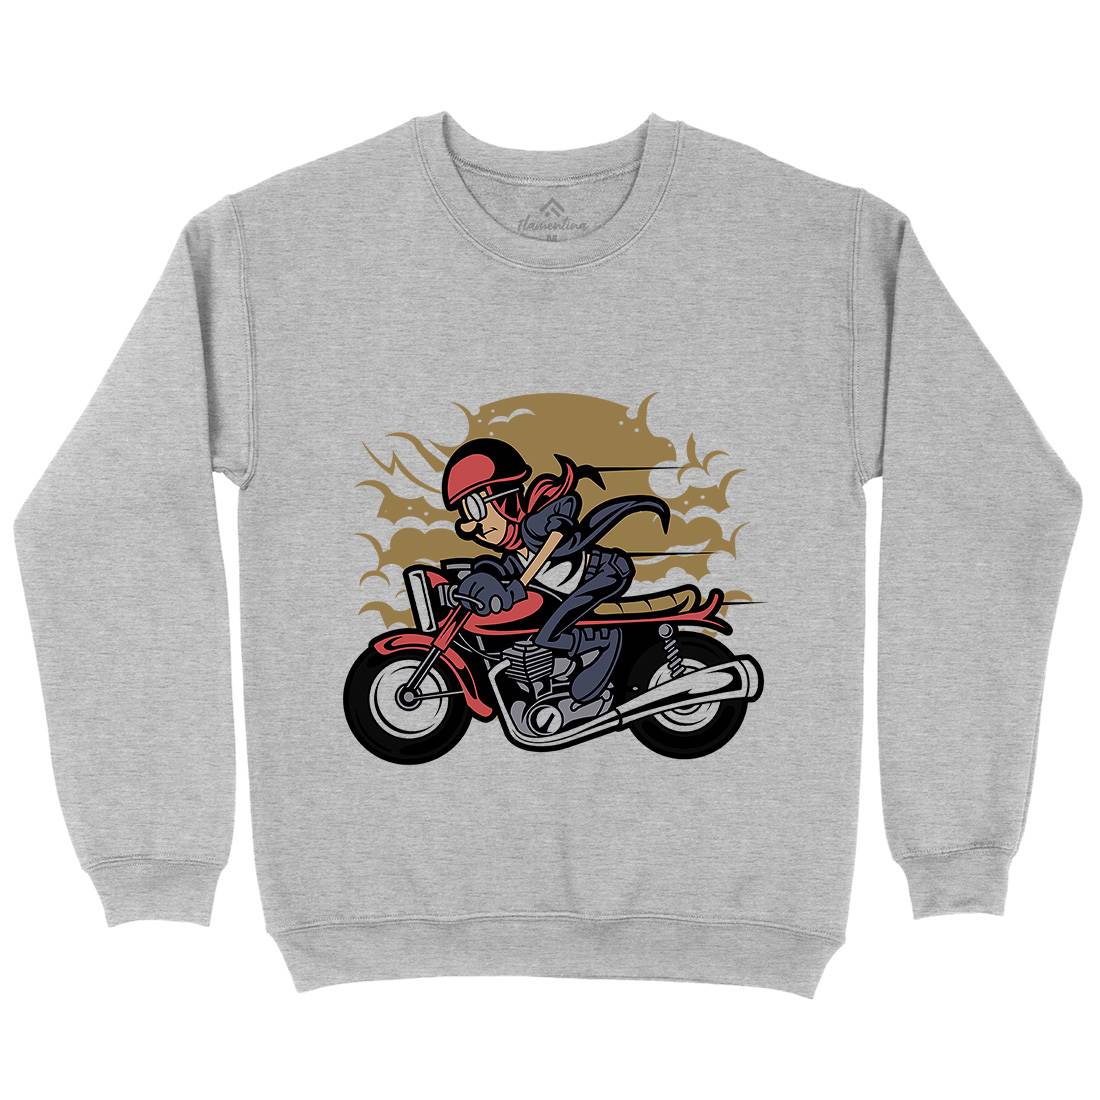 Caferacer Kids Crew Neck Sweatshirt Motorcycles C325